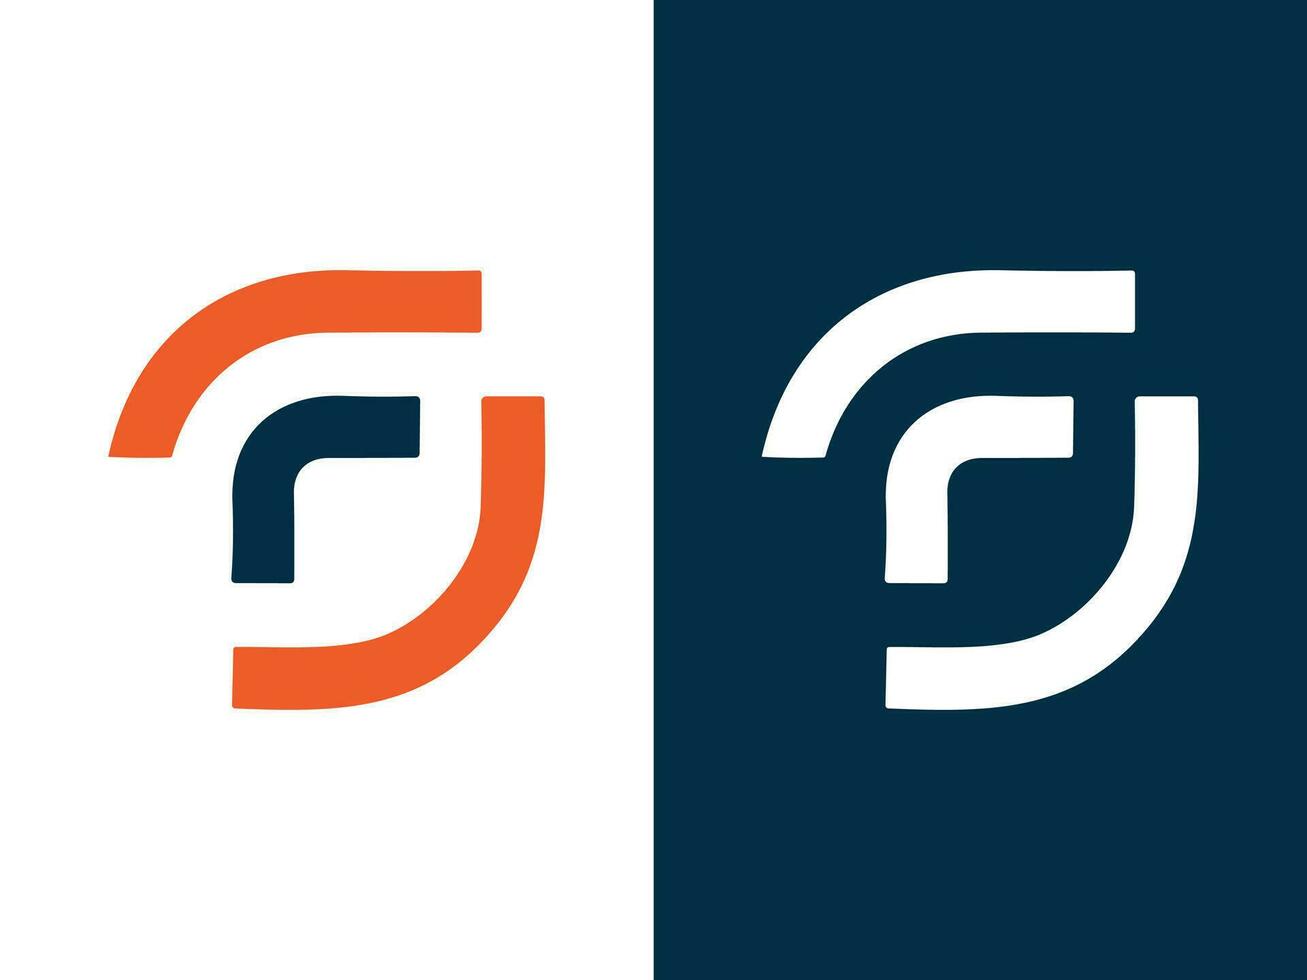 fg-Buchstaben-Logo-Design vektor